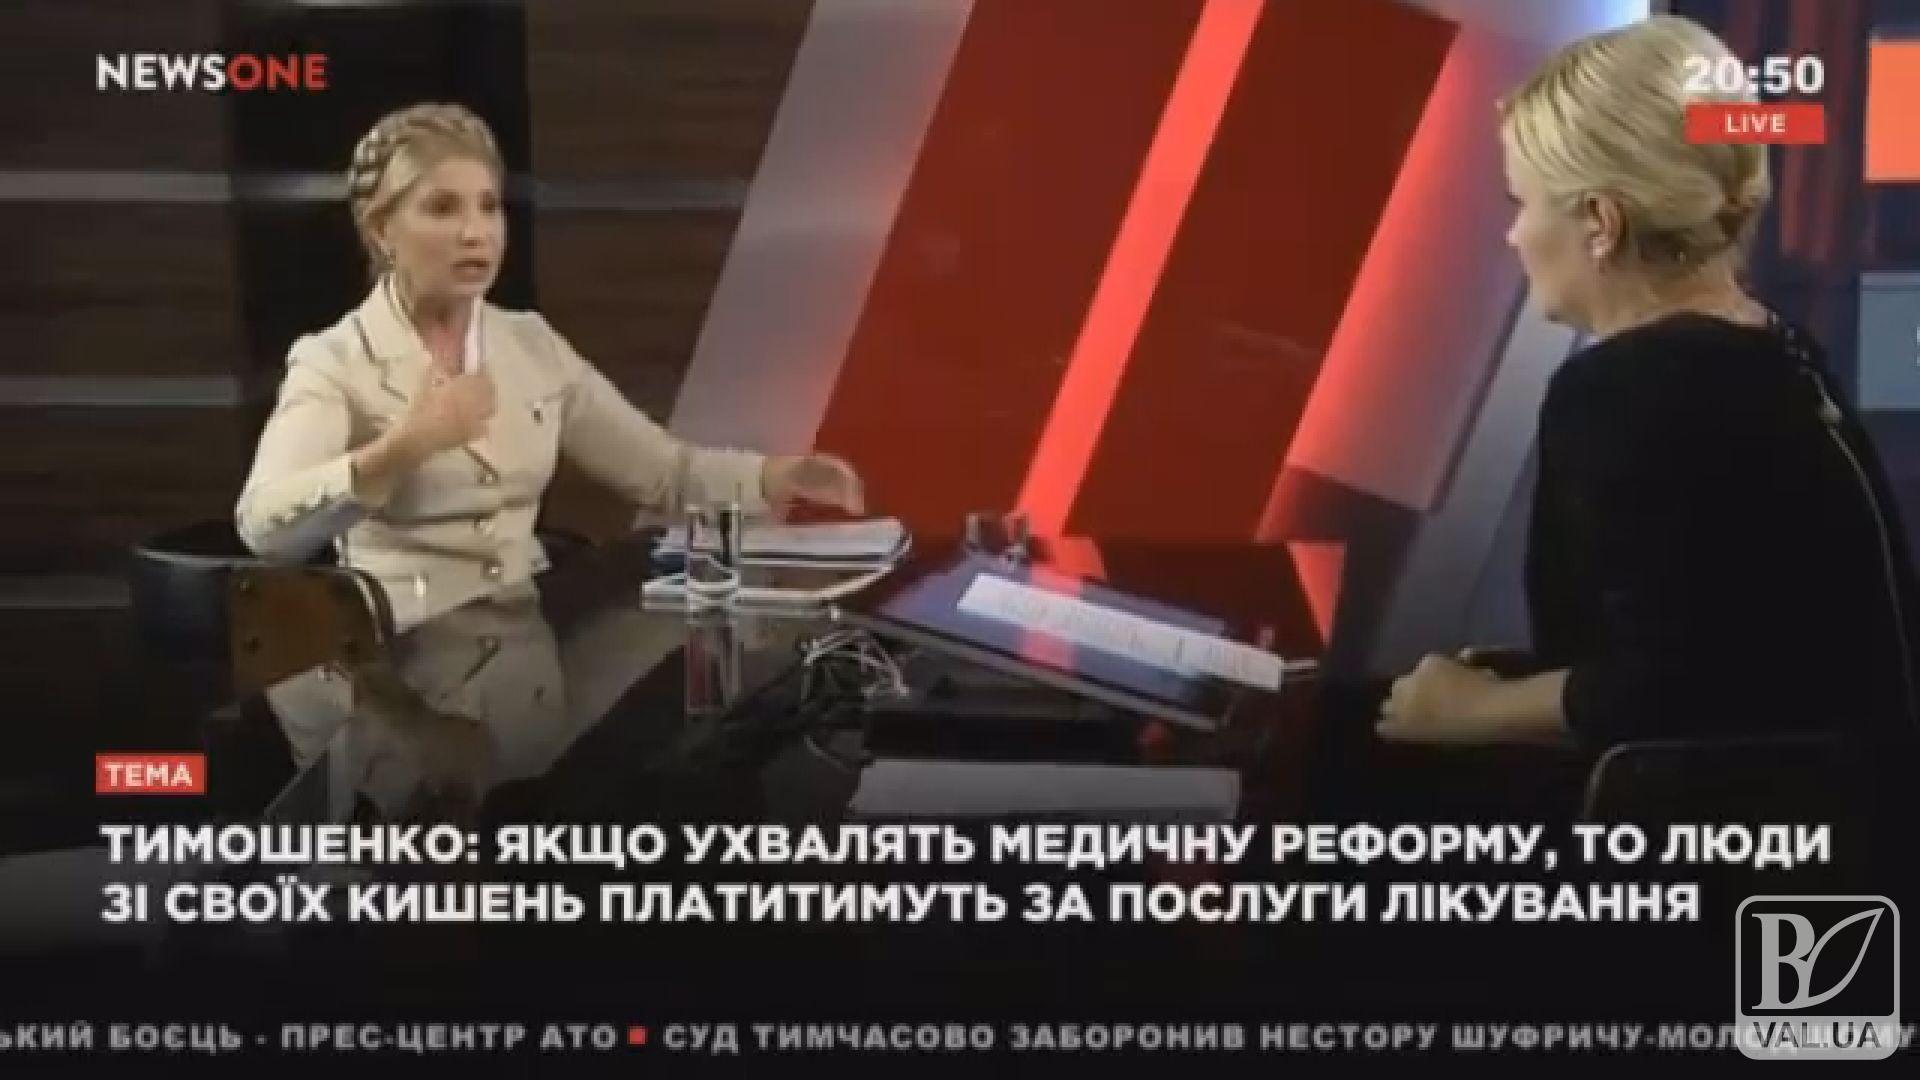 Медицинская реформа может привести к существенному сокращению населения Украины - Юлия Тимошенко. ВИДЕО